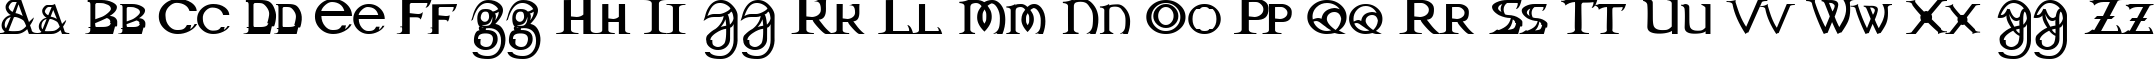 Пример написания английского алфавита шрифтом Dragonmaster Normal